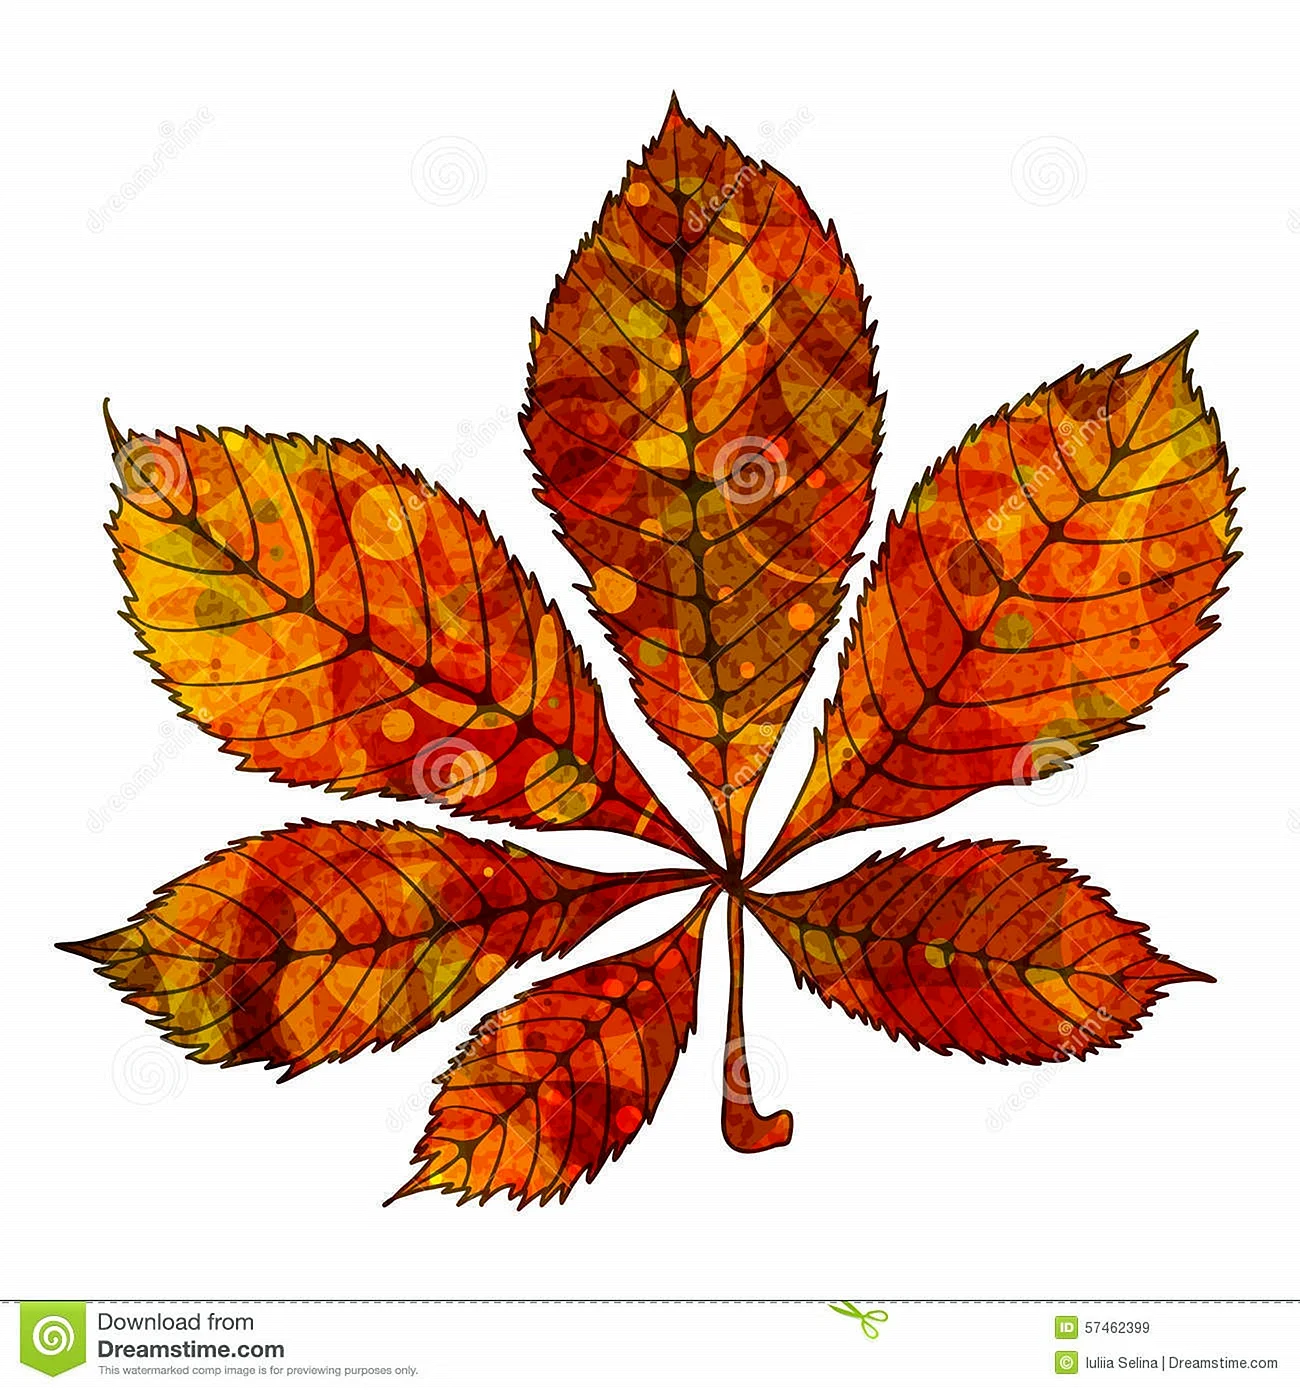 Осенний каштановый лист